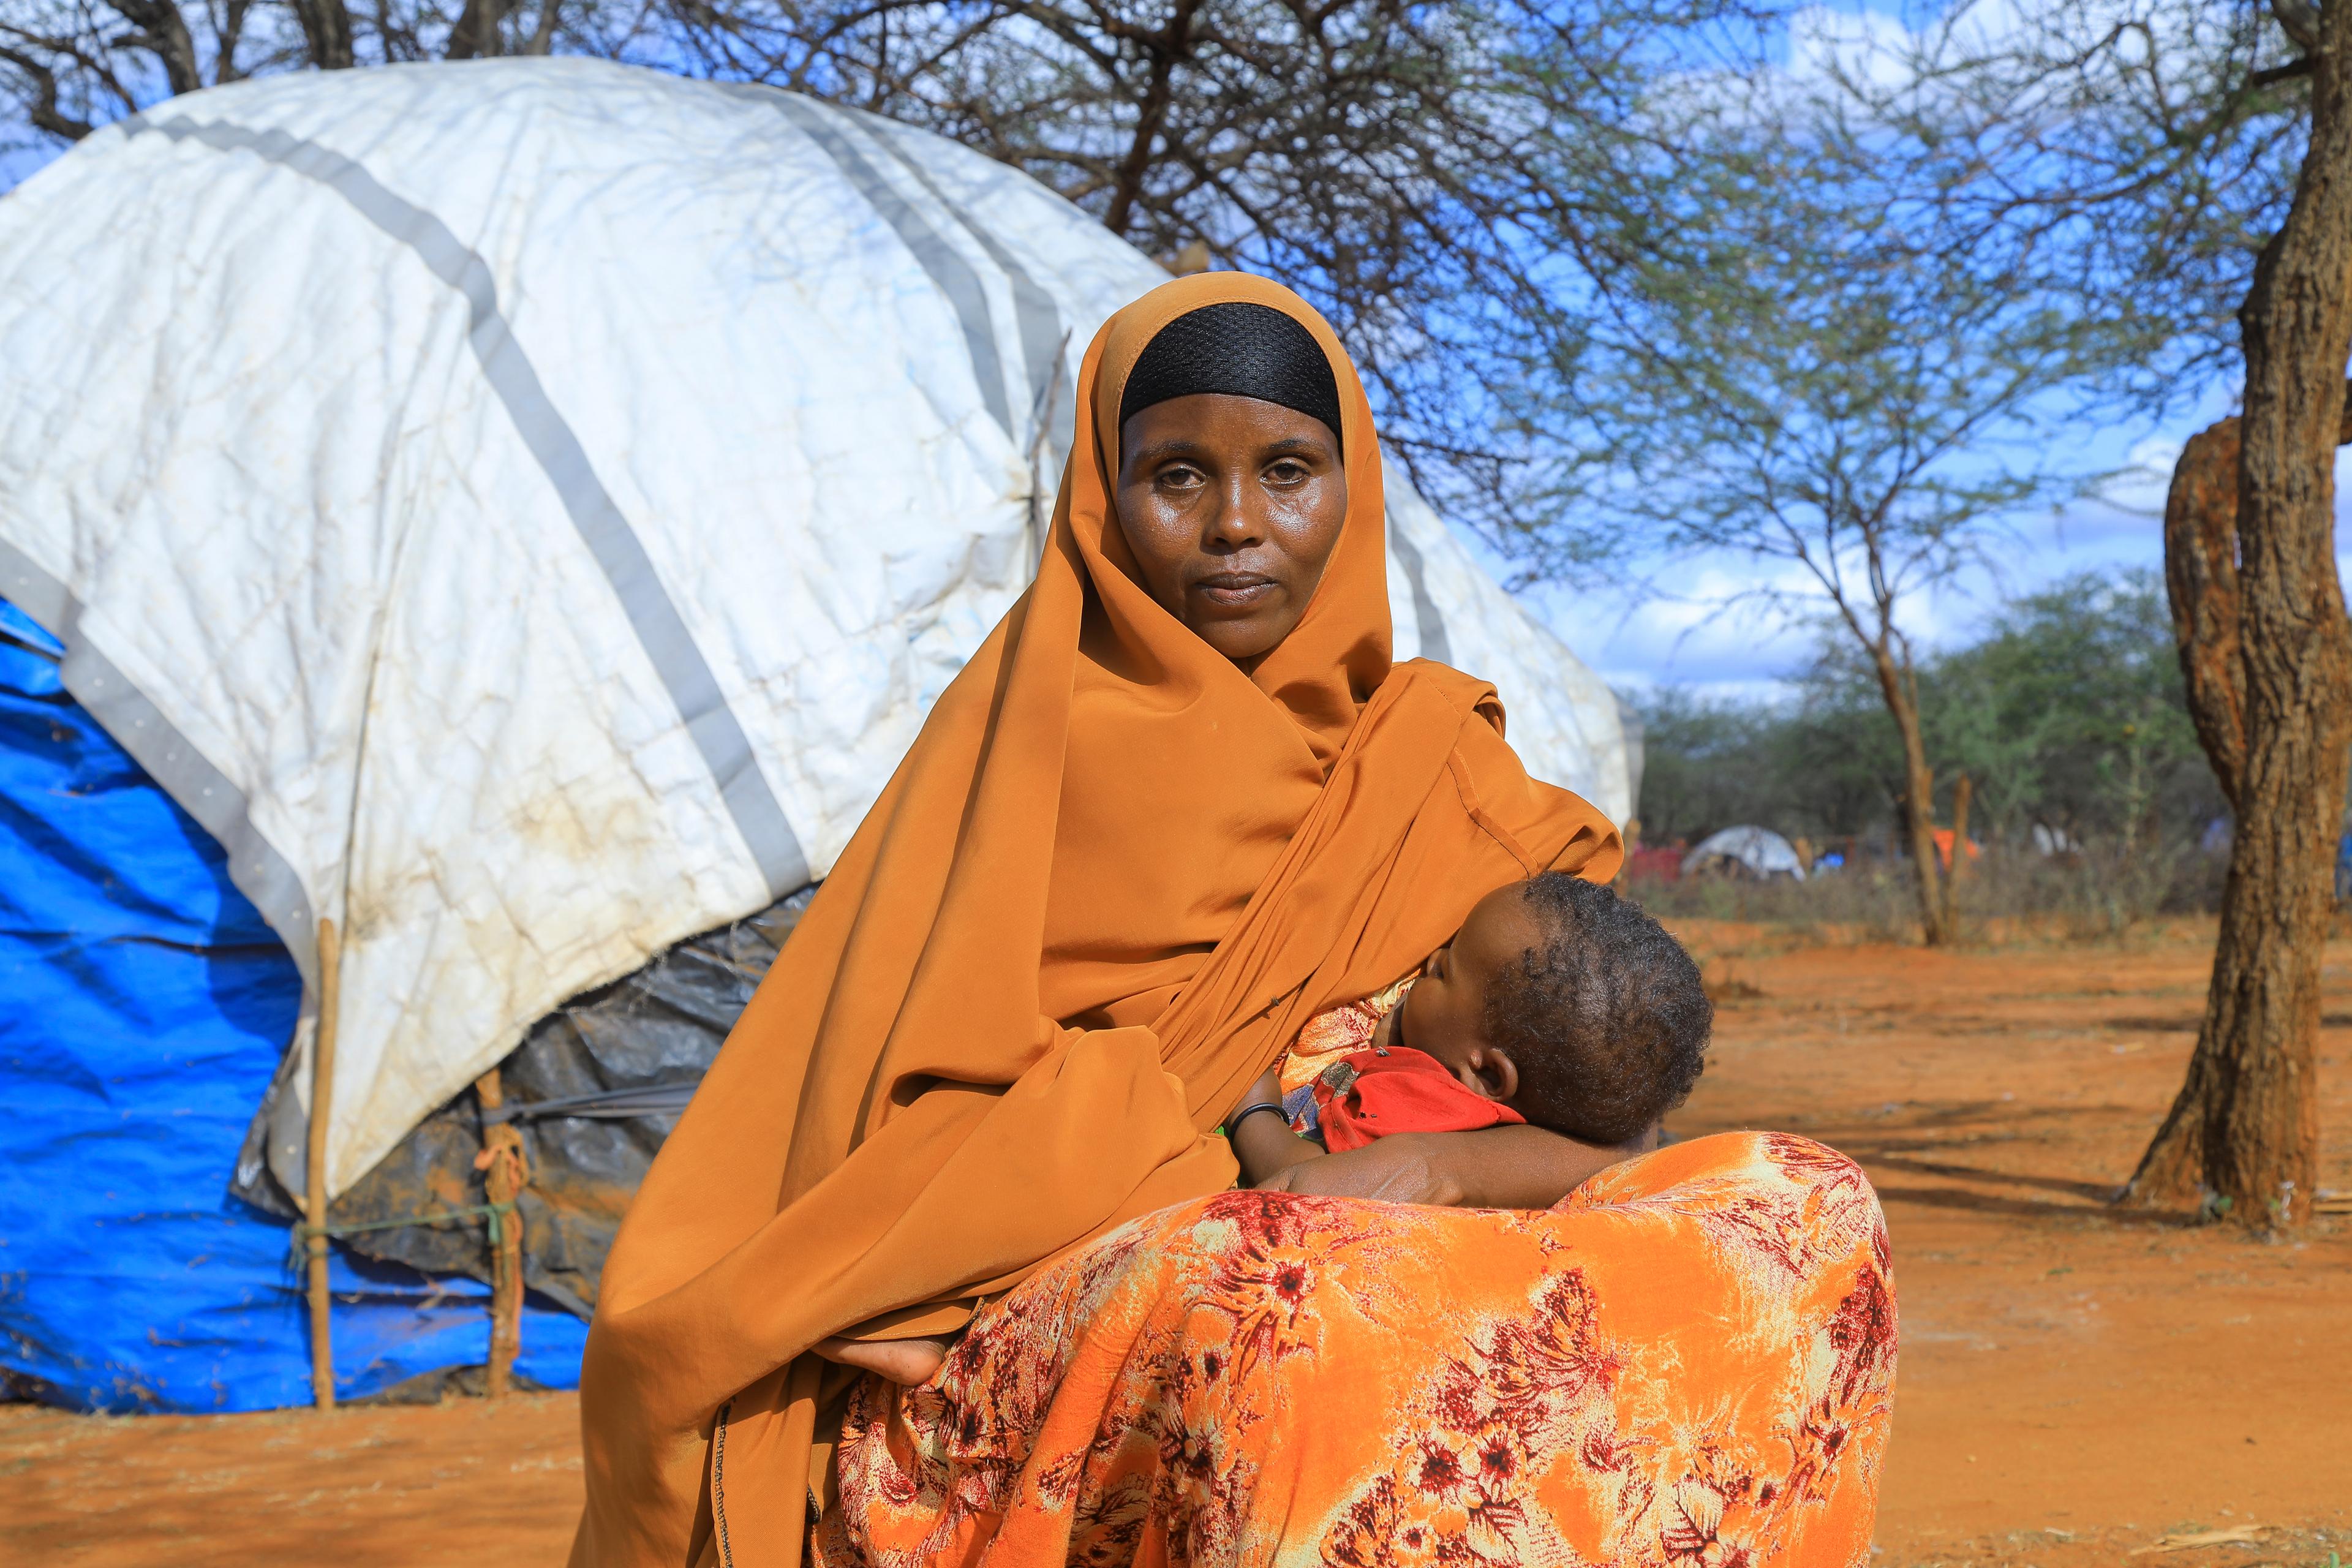 Una donna con un velo arancione e un abito dello stesso colore allatta il suo bambino davanti a una tenda.